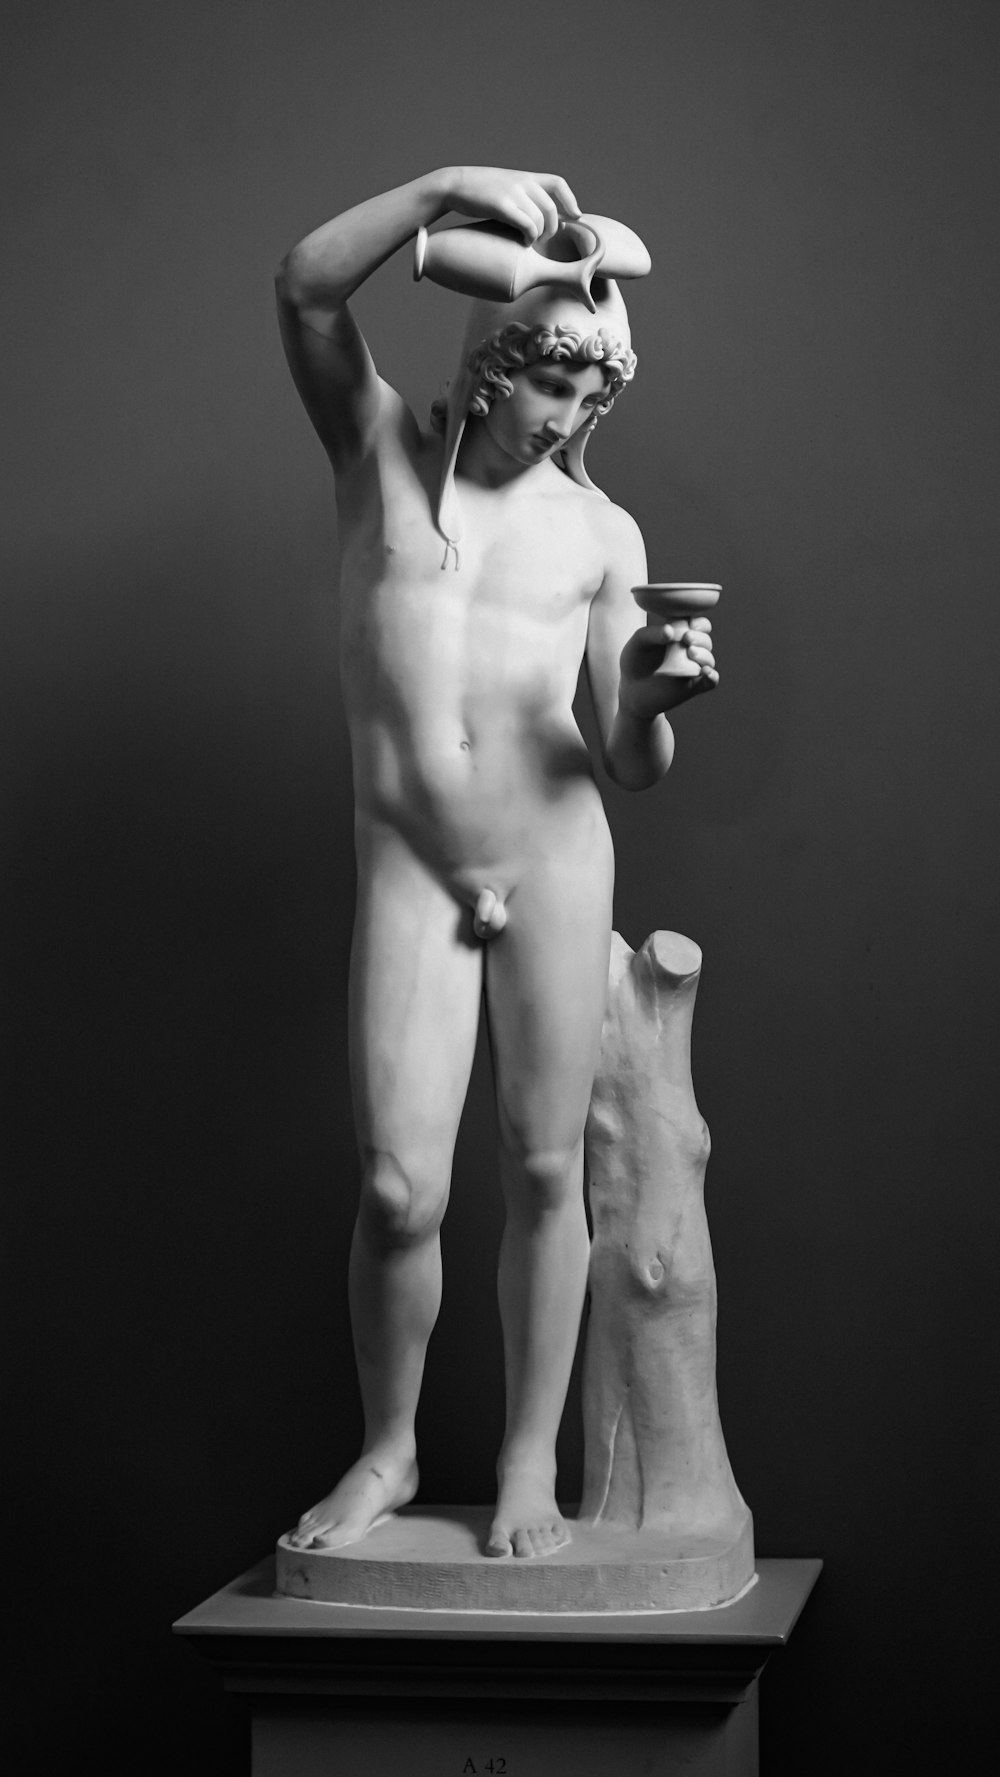 Ein Schwarz-Weiß-Foto einer Statue eines Mannes, der eine Tasse hält